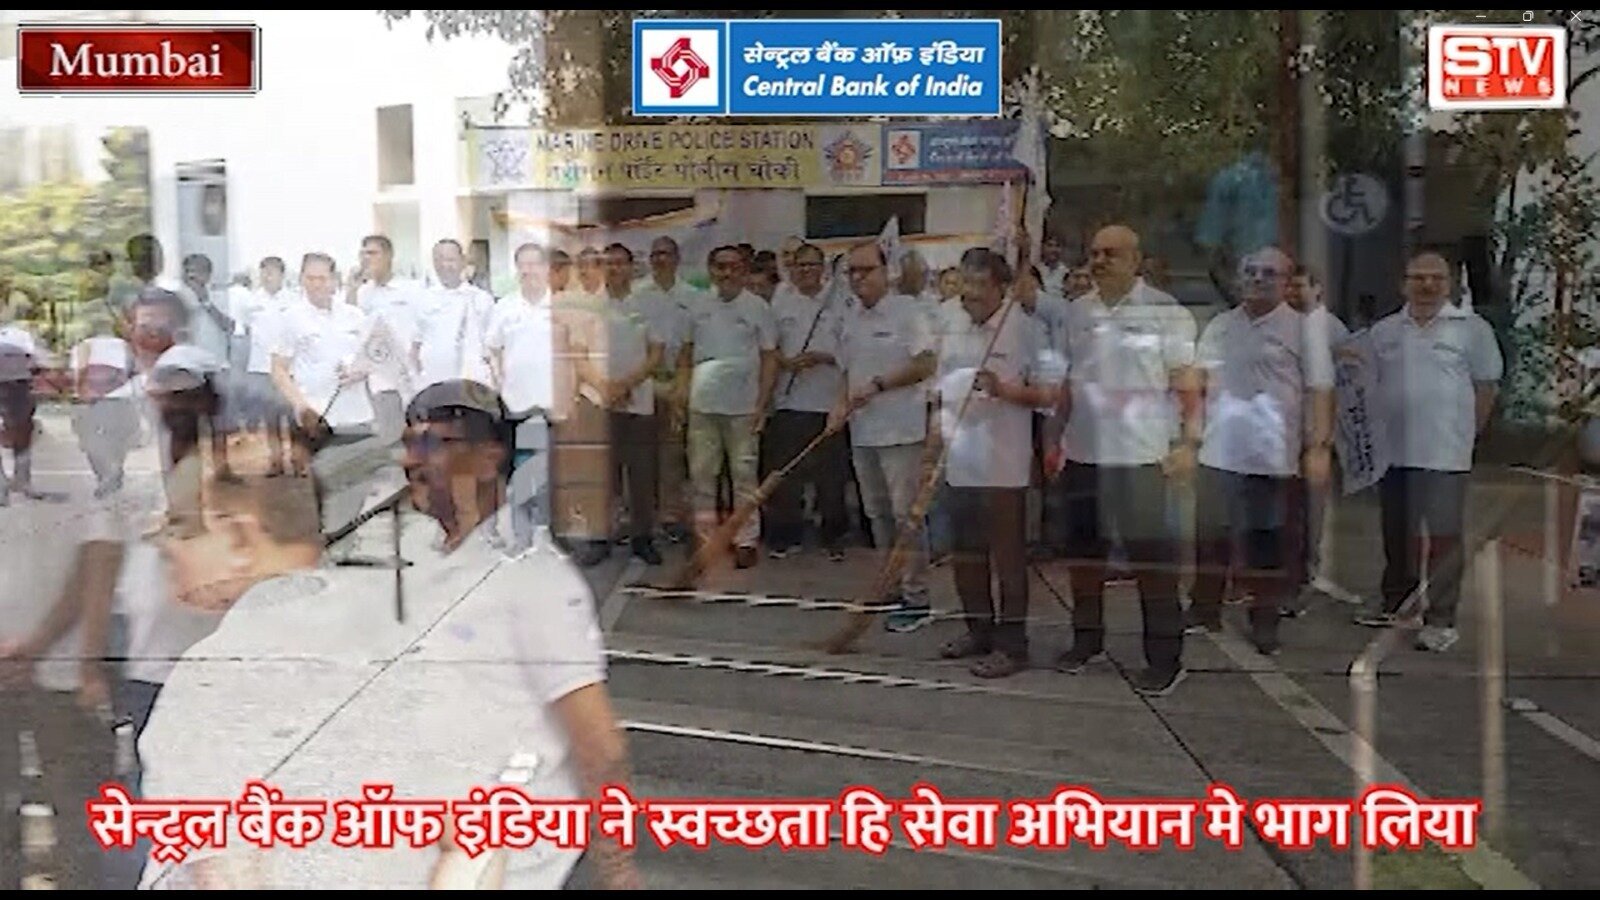 STV News | Central Bank Of India l ने स्वच्छता हि सेवा अभियान मे भाग लिया एम डी. एम वी. राव  भी मौजूद रहे